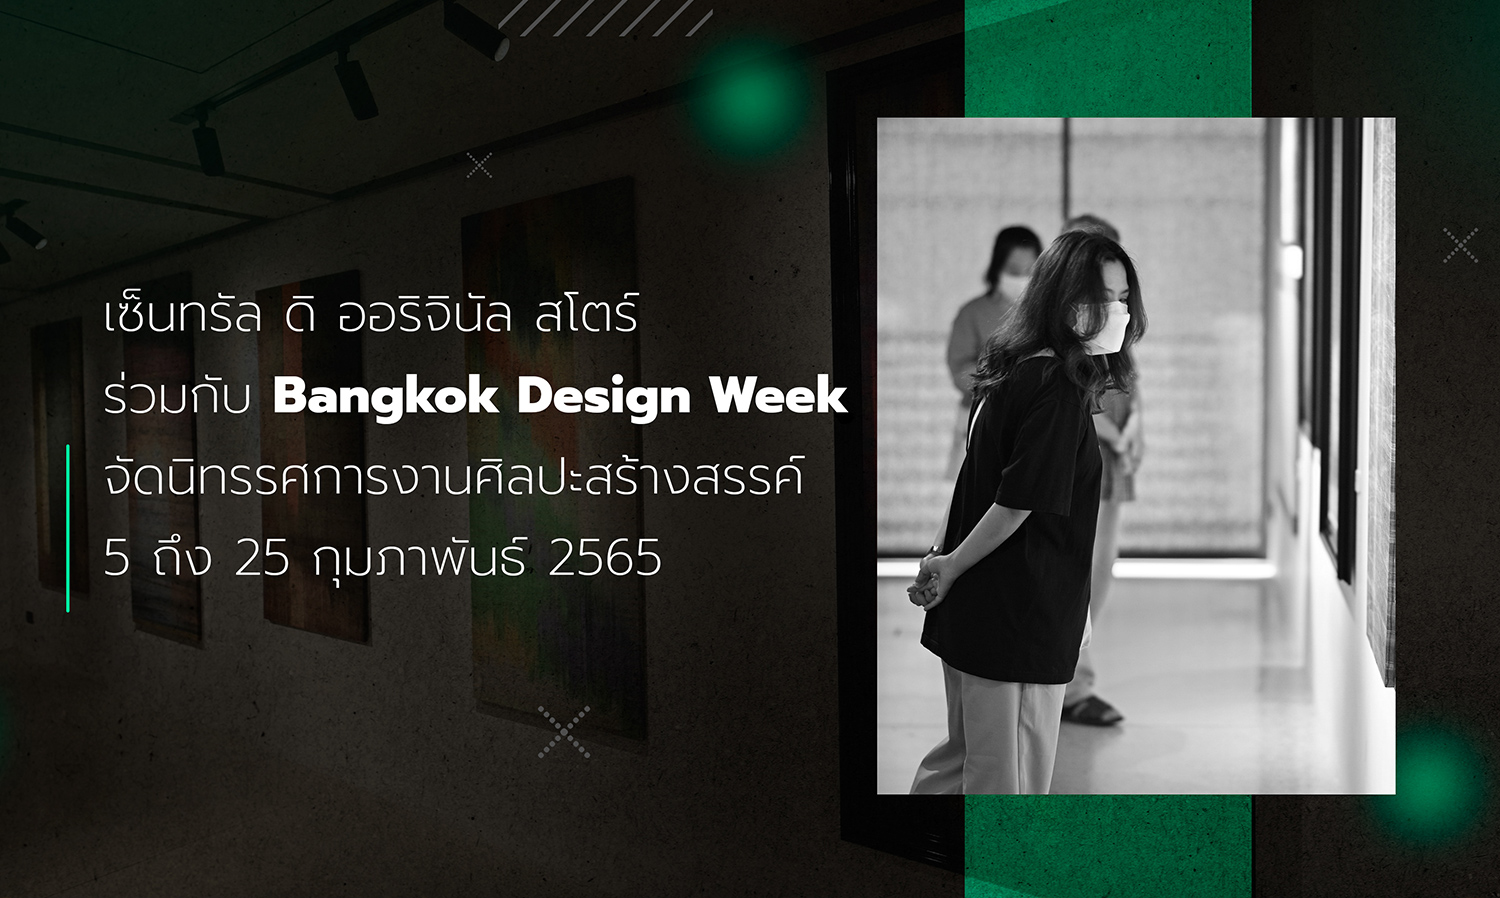 เซ็นทรัล ดิ ออริจินัล สโตร์ ร่วมกับ Bangkok Design Week จัดนิทรรศการงานศิลปะสร้างสรรค์ 5 ถึง 25 กุมภาพันธ์ 2565